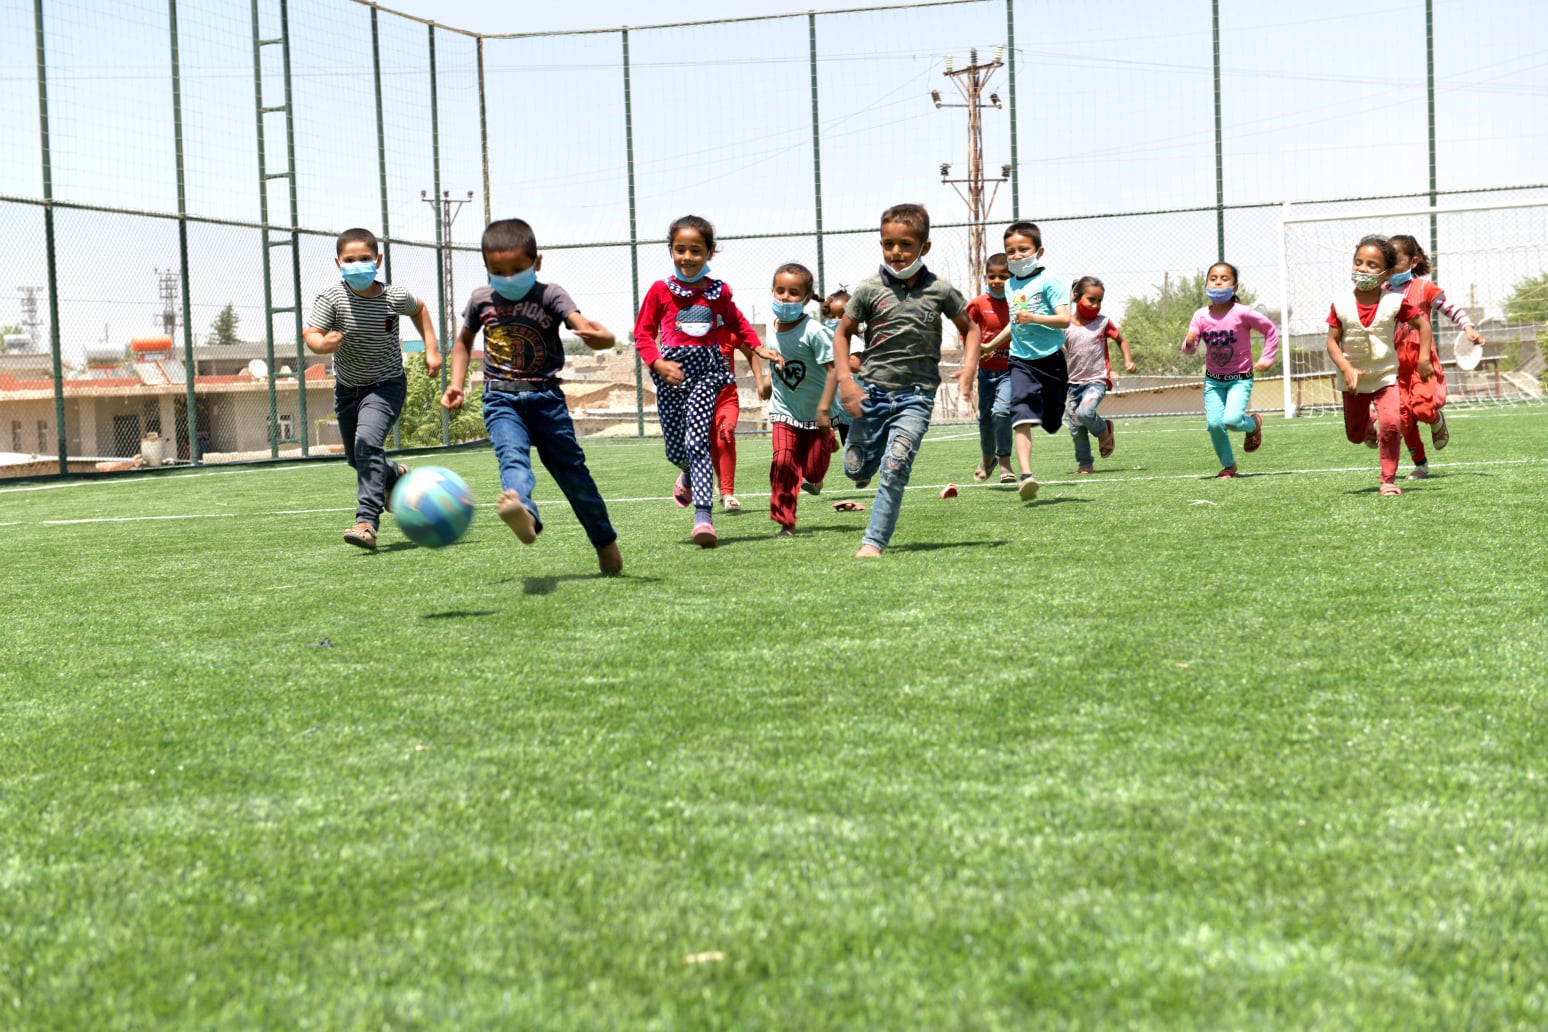  Harran’da Kırsala Spor Yatırımları Devam Ediyor